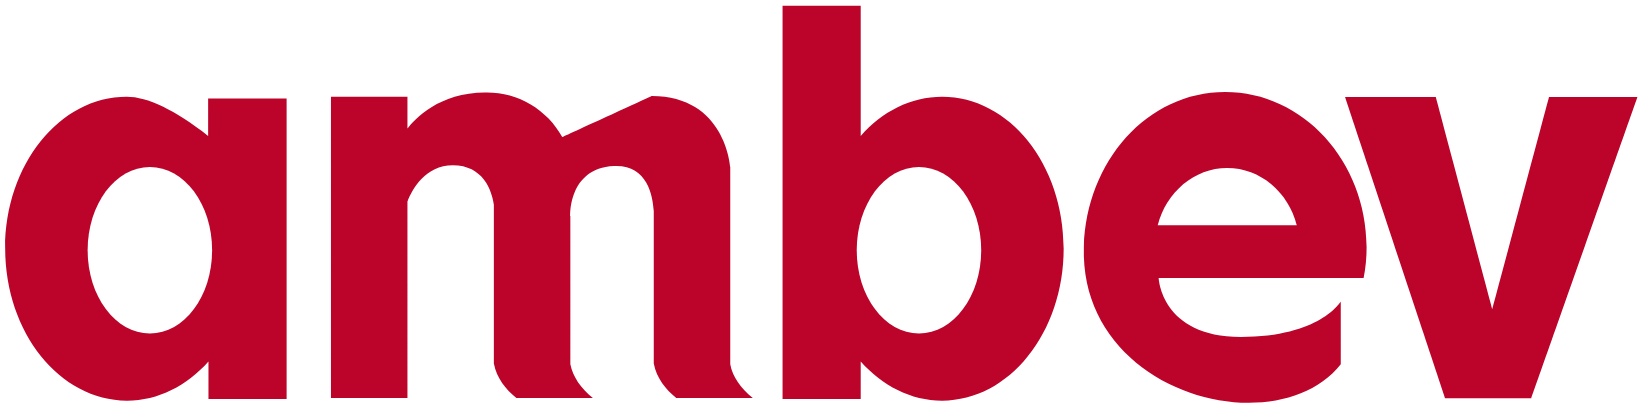 Ambev logo large (transparent PNG)